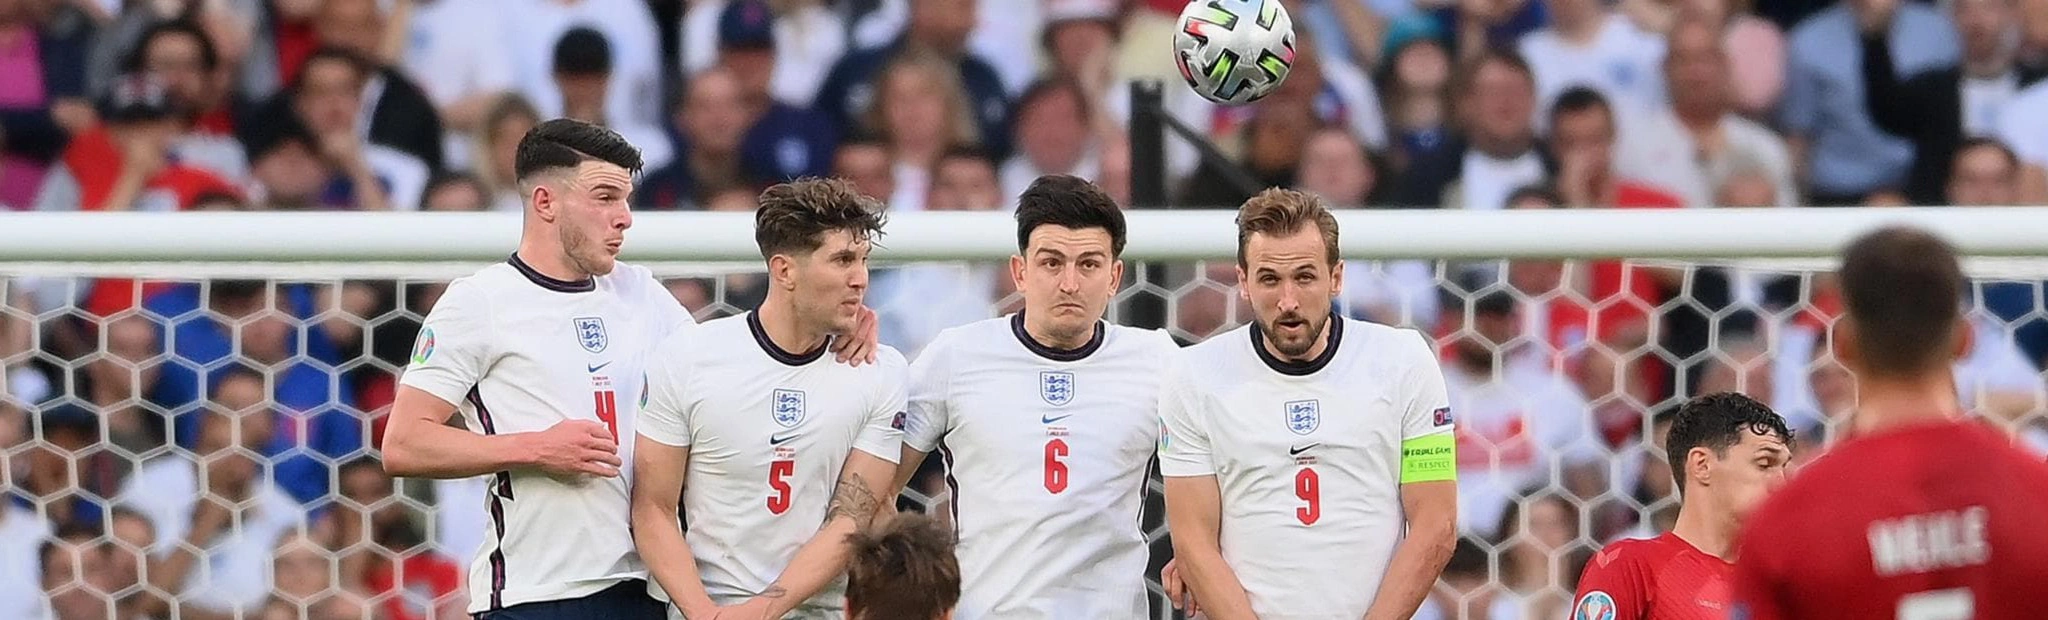 Выход сборной Англии в финал Евро-2020 после победы над Данией